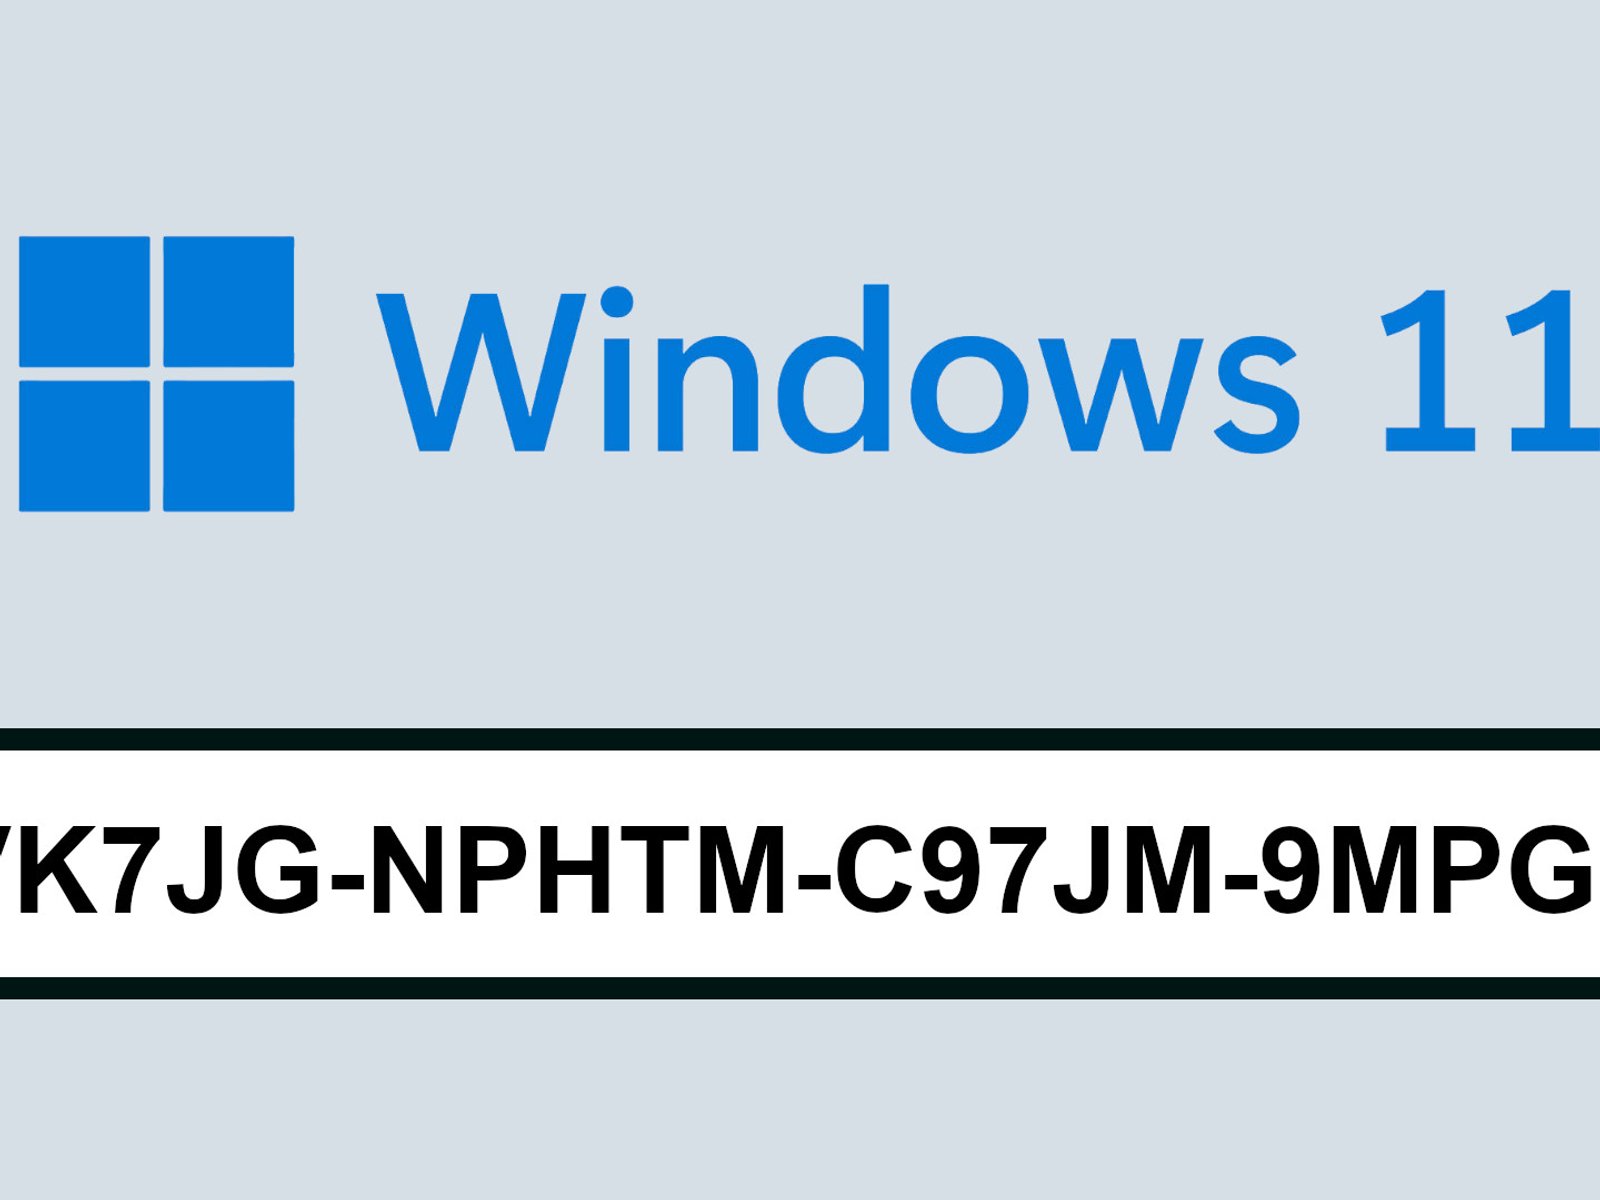 Windows 20 und 20 Product Key auslesen – so geht's